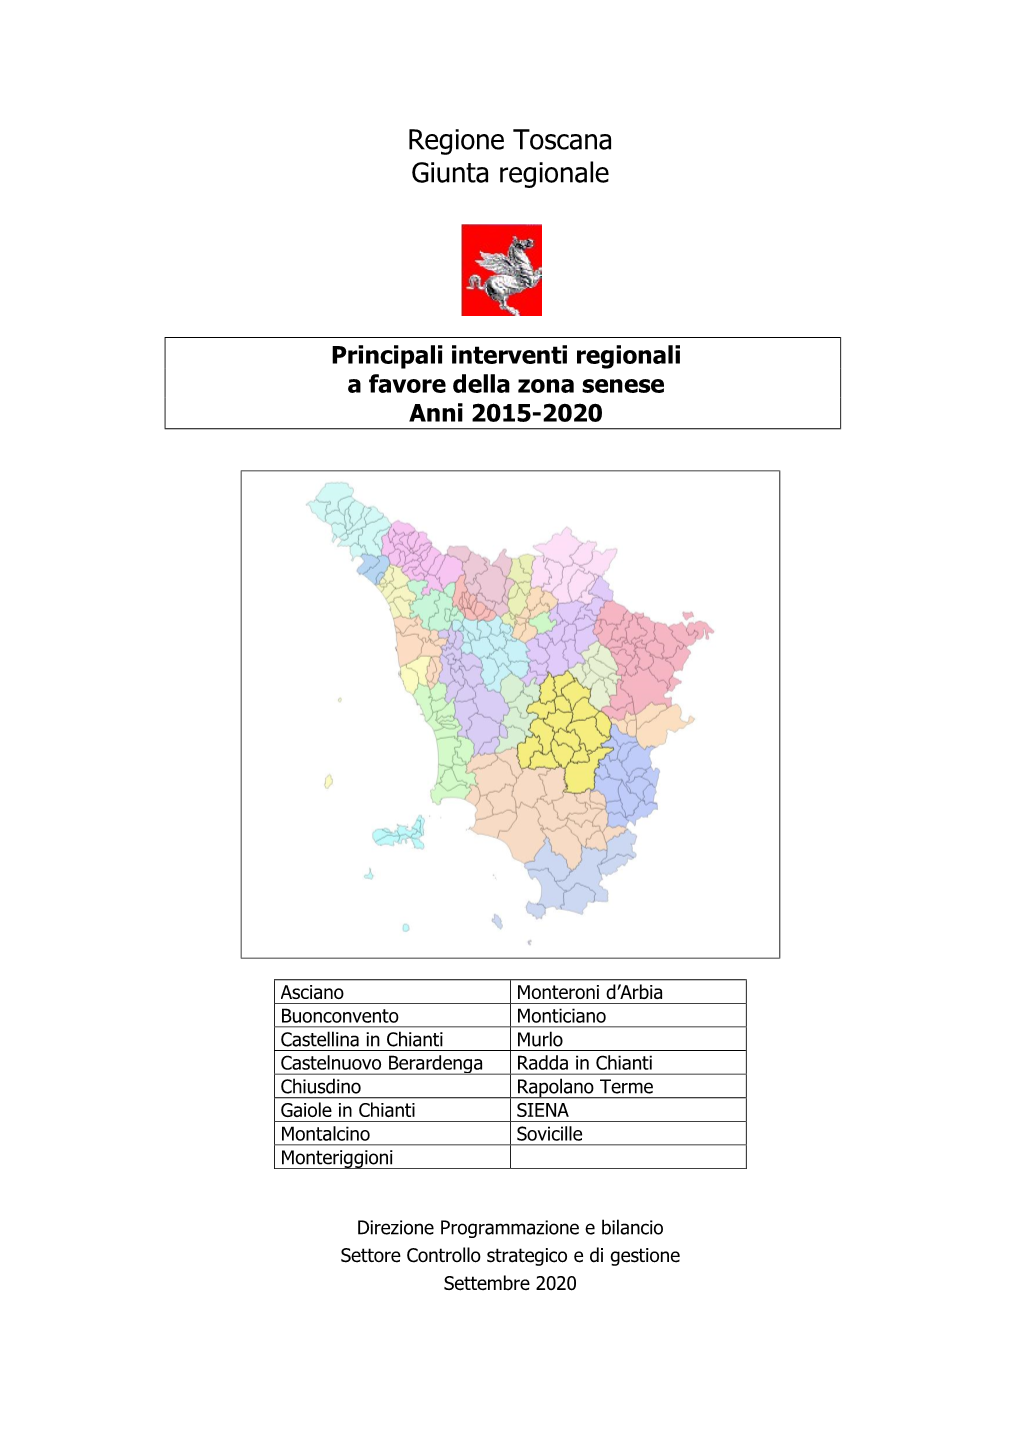 Principali Interventi Regionali a Favore Della Zona Senese Anni 2015-2020